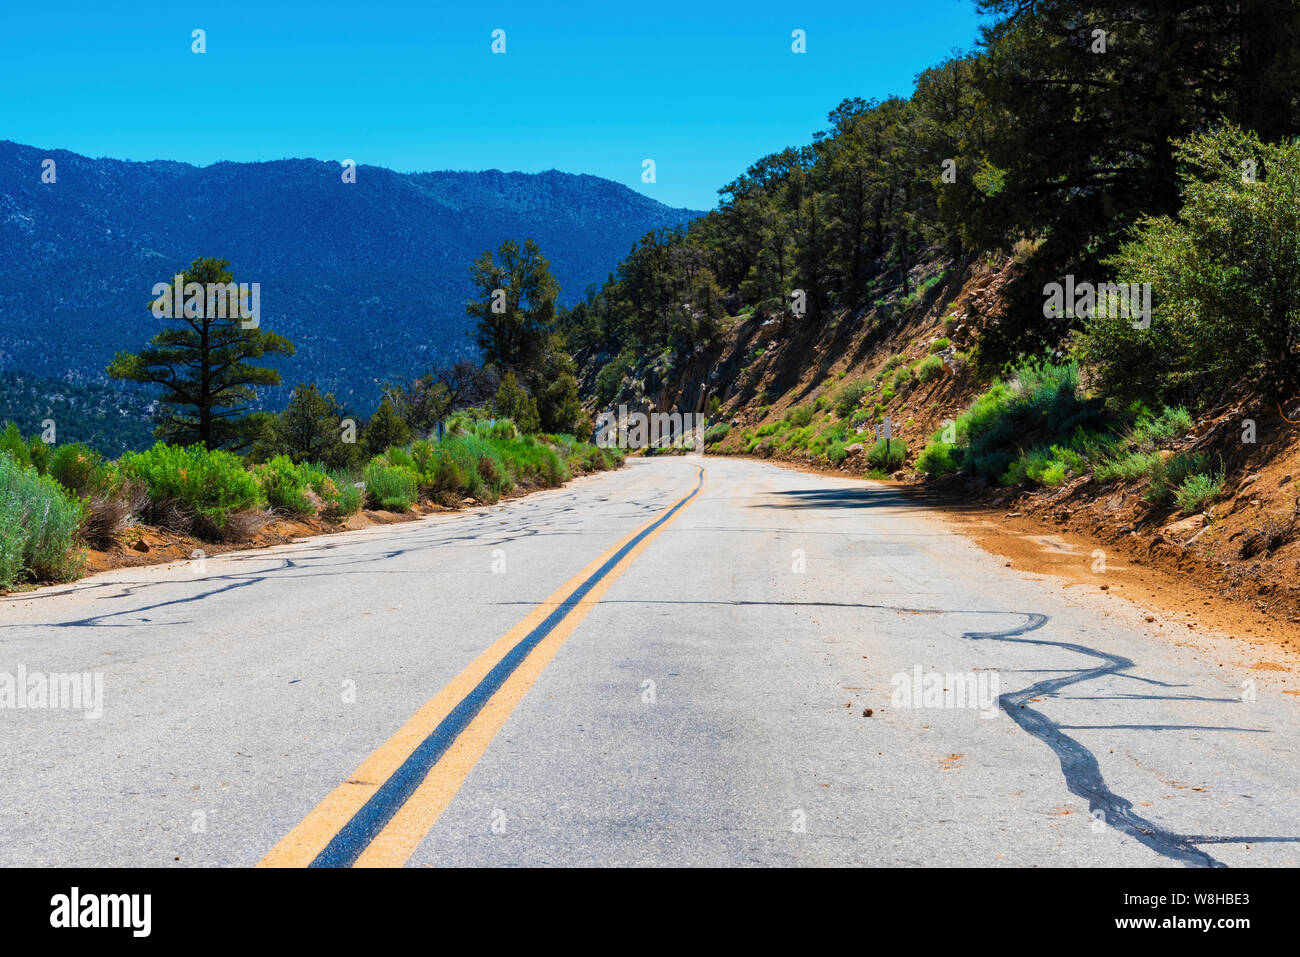 Schmale gerade Asphaltstraße mit gelben Linien, die Hügel in Richtung Berge unter strahlend blauen Himmel. Stockfoto